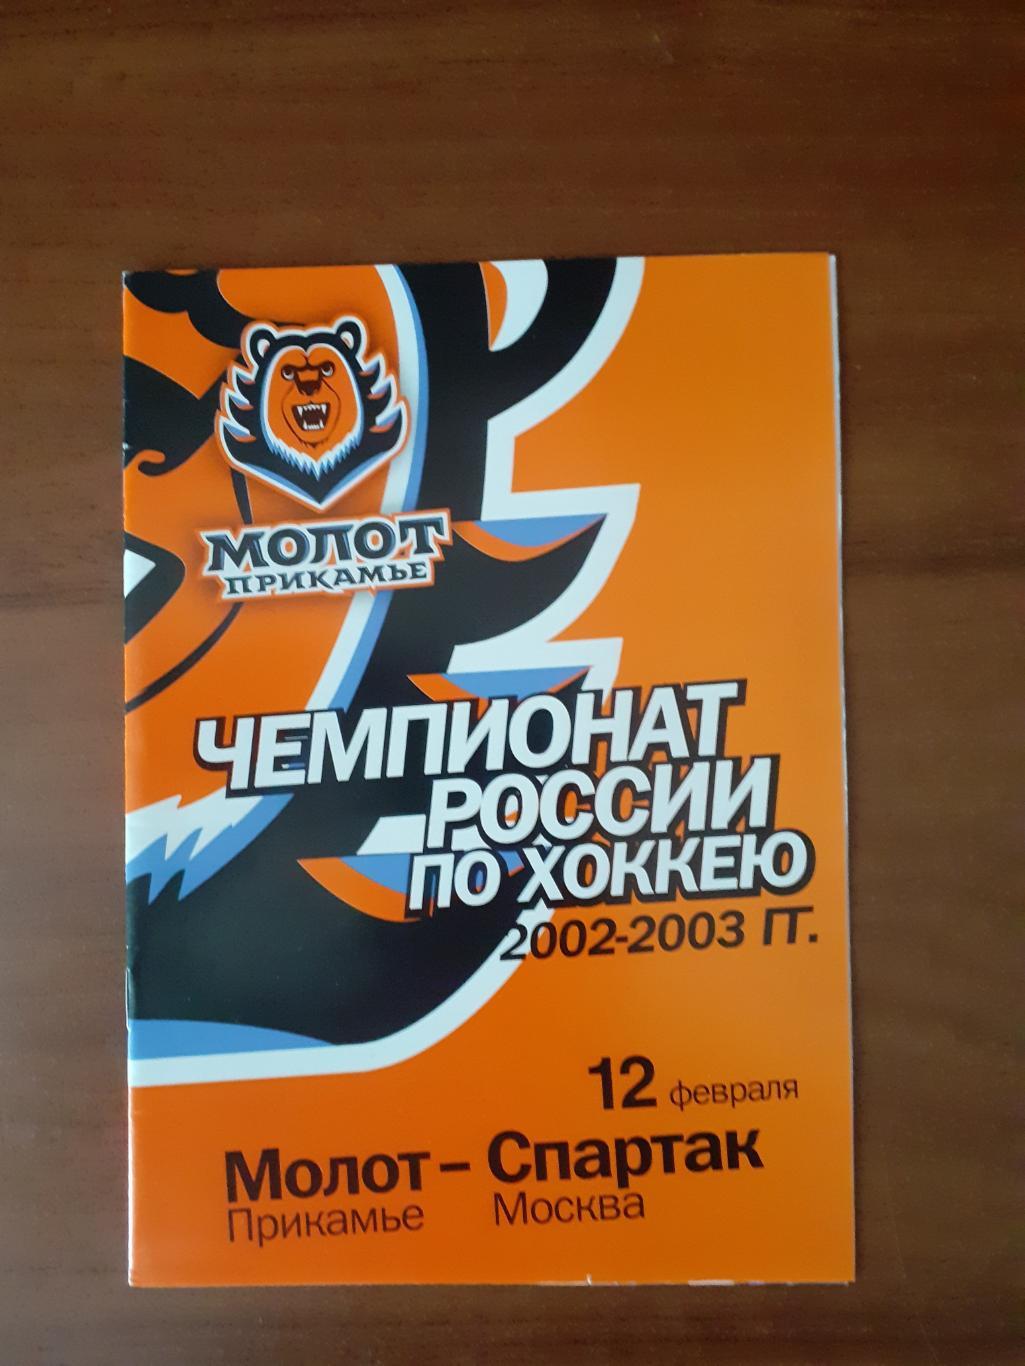 Молот-Прикамье Пермь - Спартак Москва - 12 февраля 2003г.г.